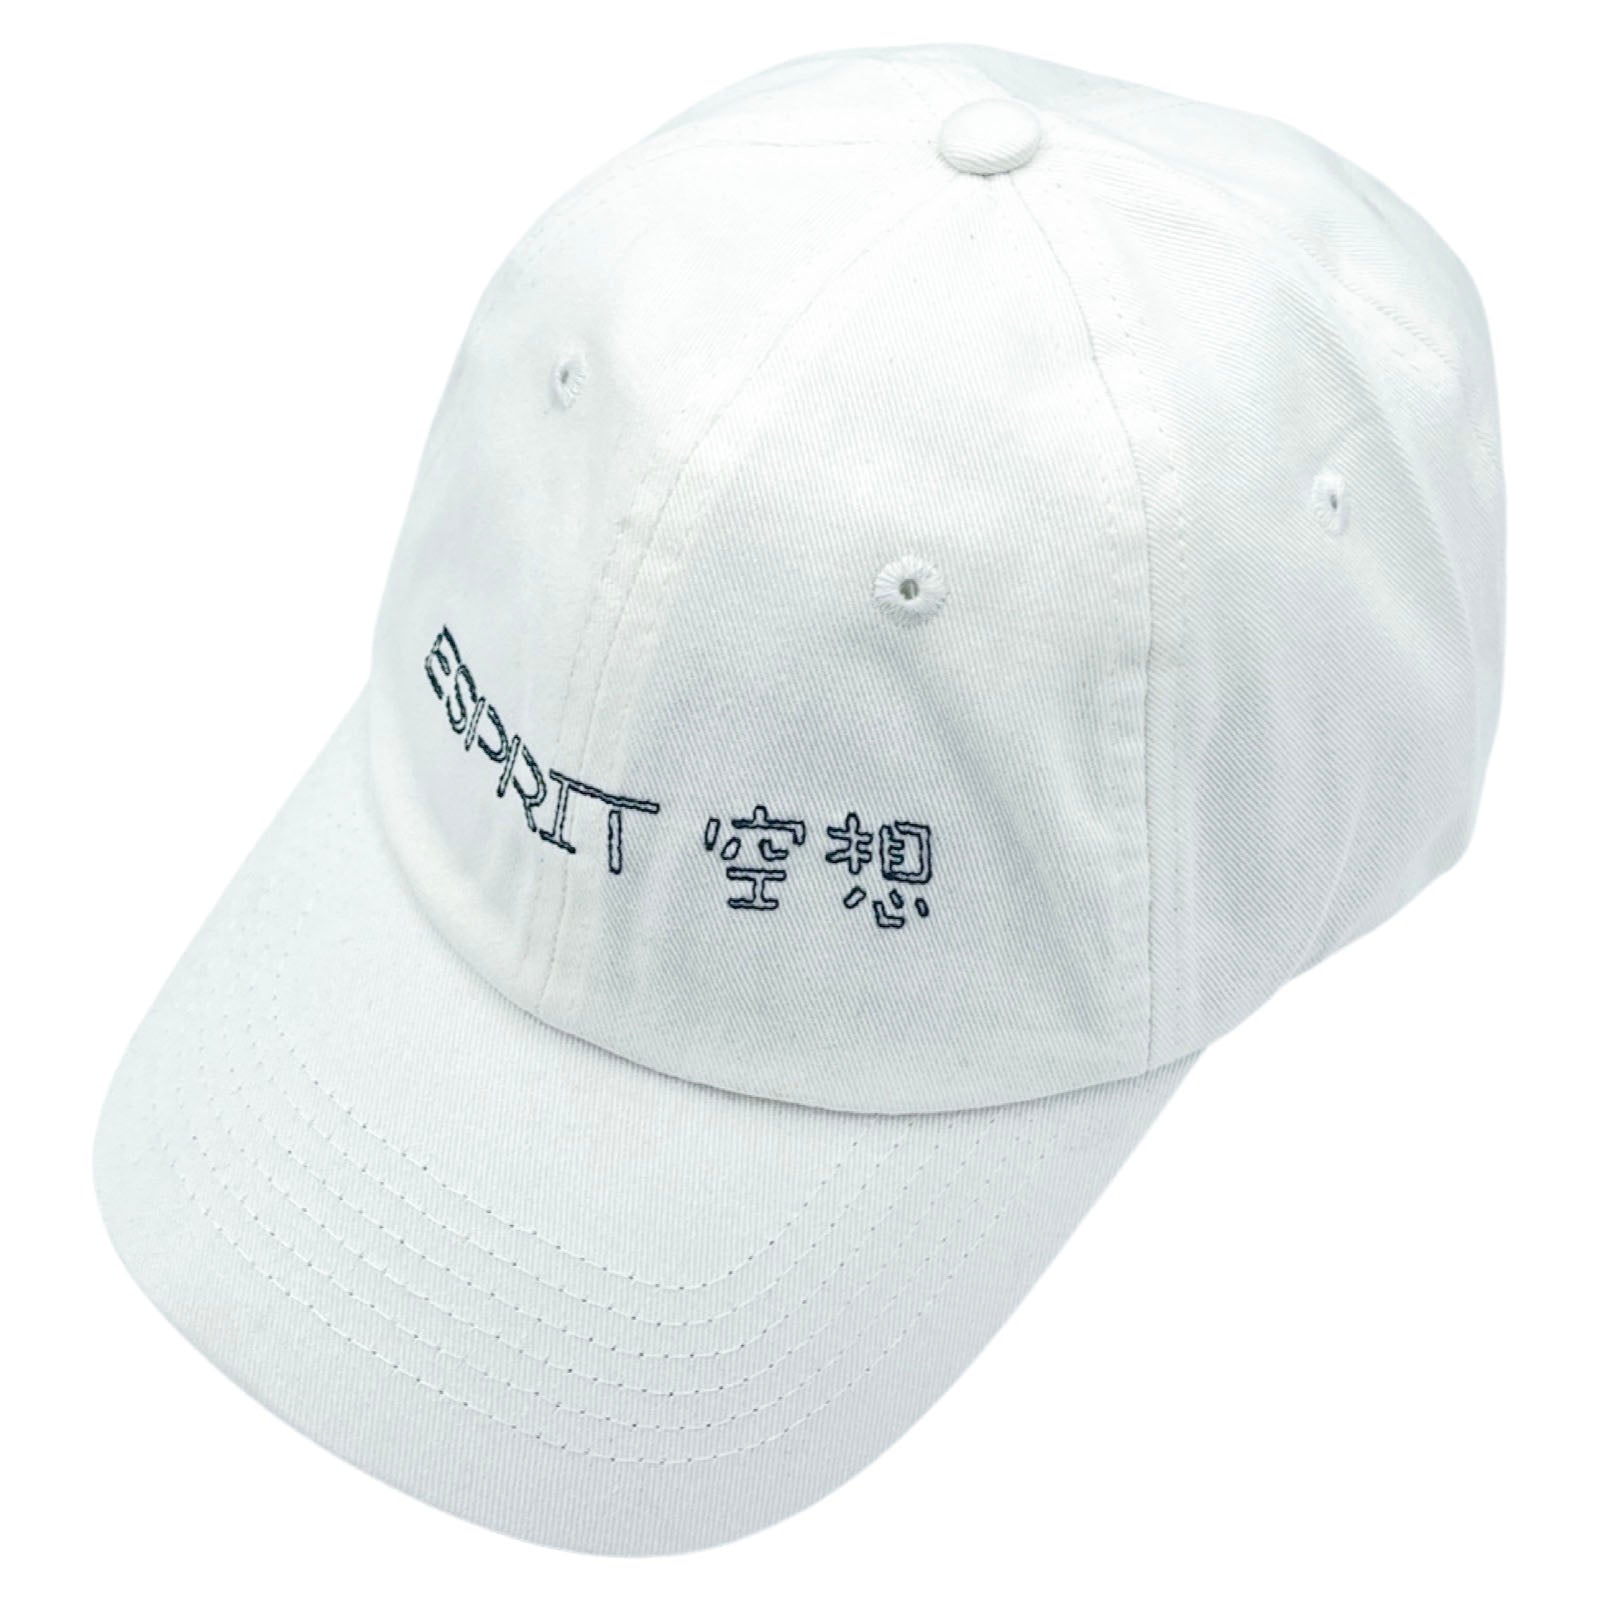 ESPRIT 空想 - ESPRIT 空想 Cap (White) - 100% Electronica Official Store (Photo 1)